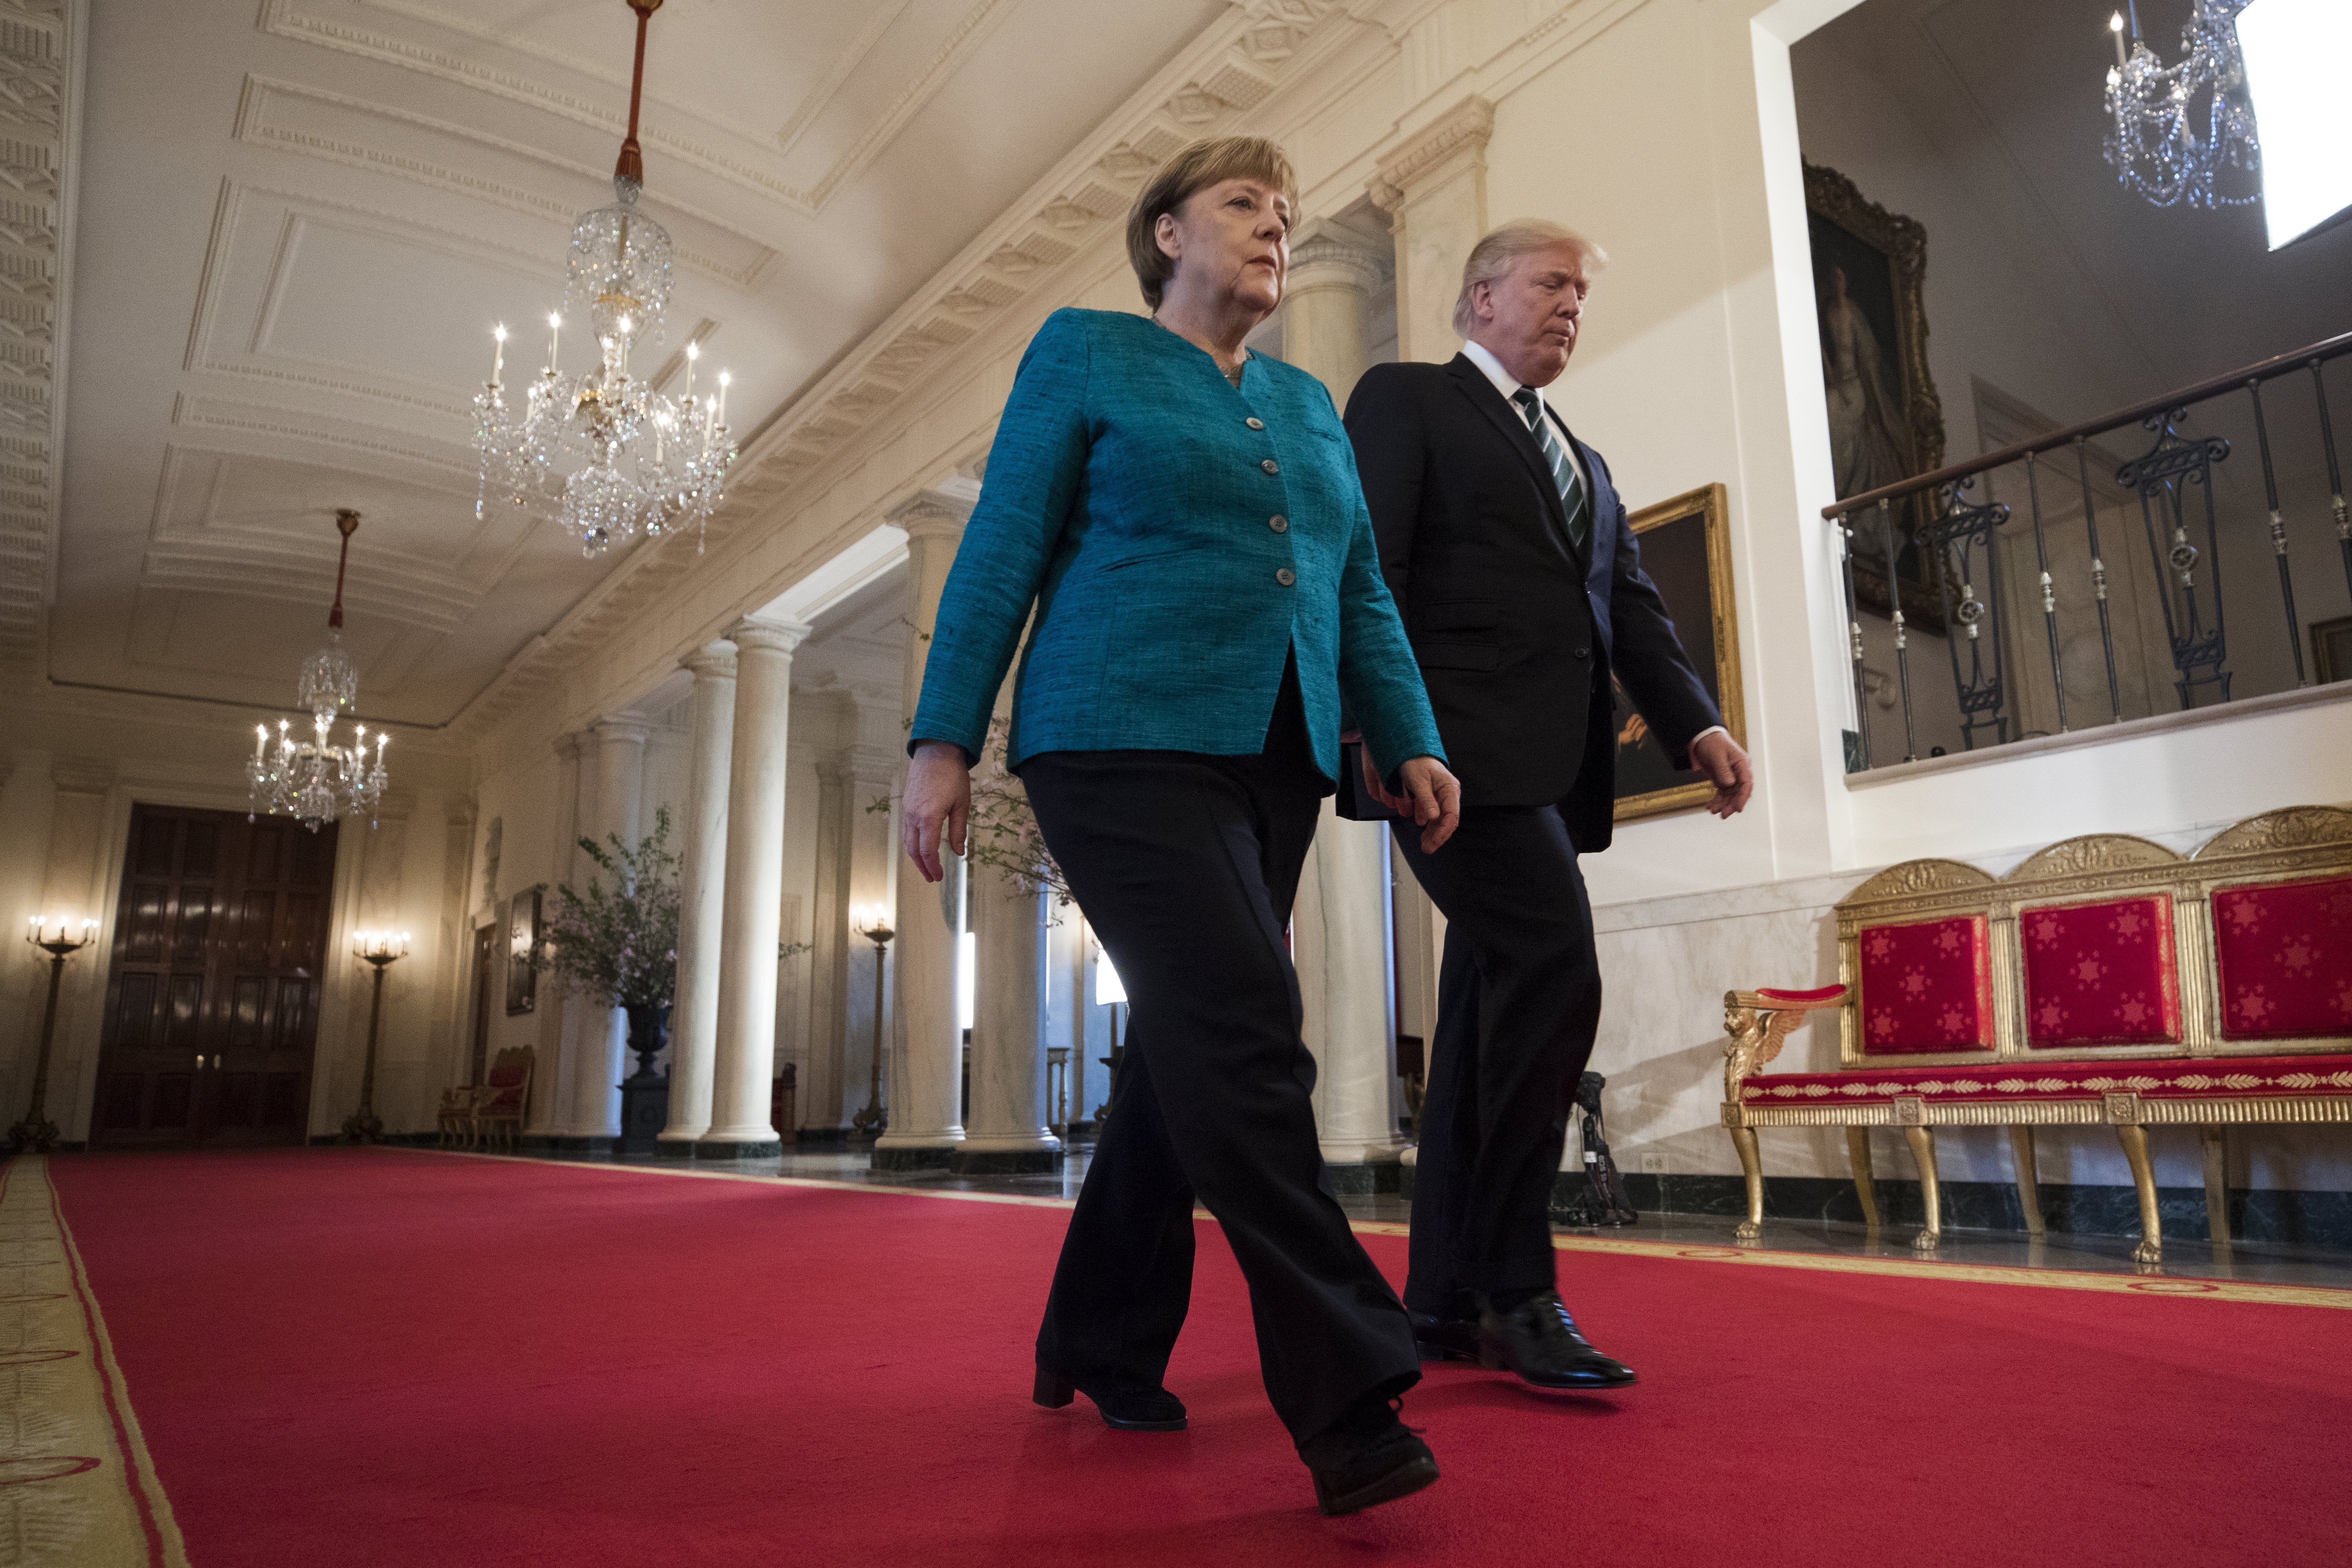  Arranca reunión entre Merkel y Trump en la Casa Blanca